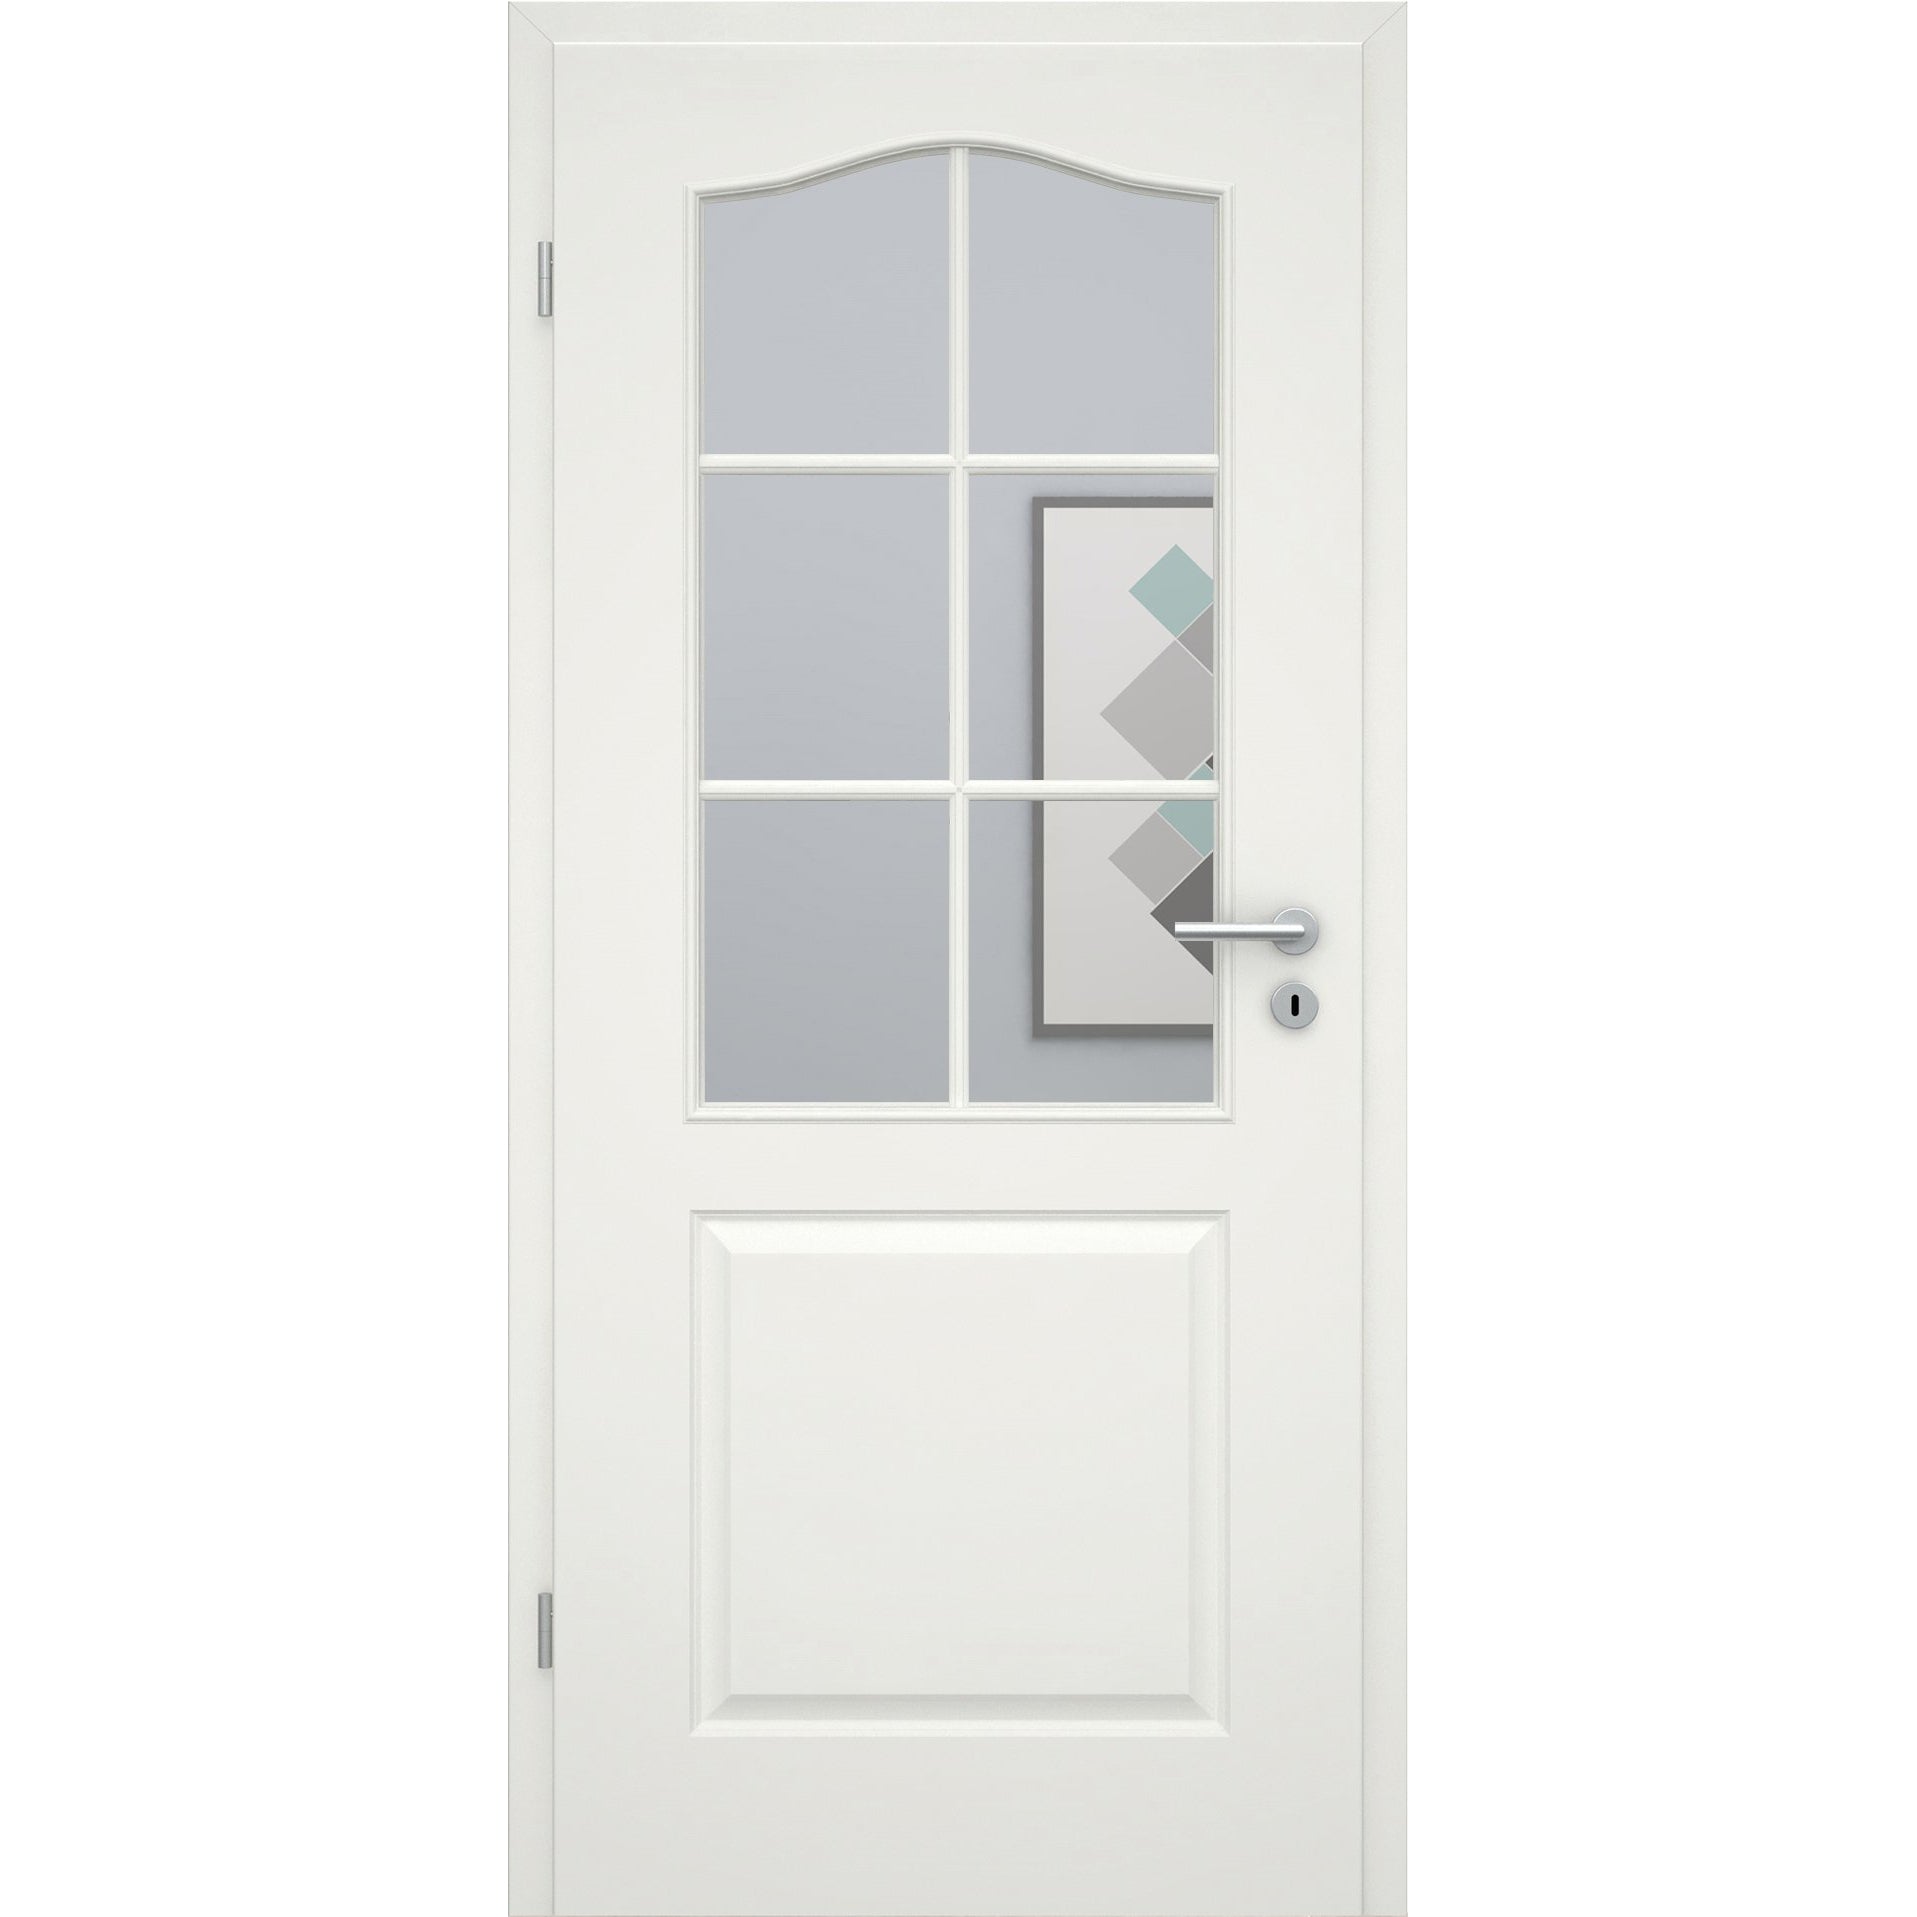 Zimmertür mit Lichtausschnitt mit Sprossenrahmen standard soft-weiß 2 Kassetten Schweifbogen Rundkante - Modell Stiltür KS21LASPS